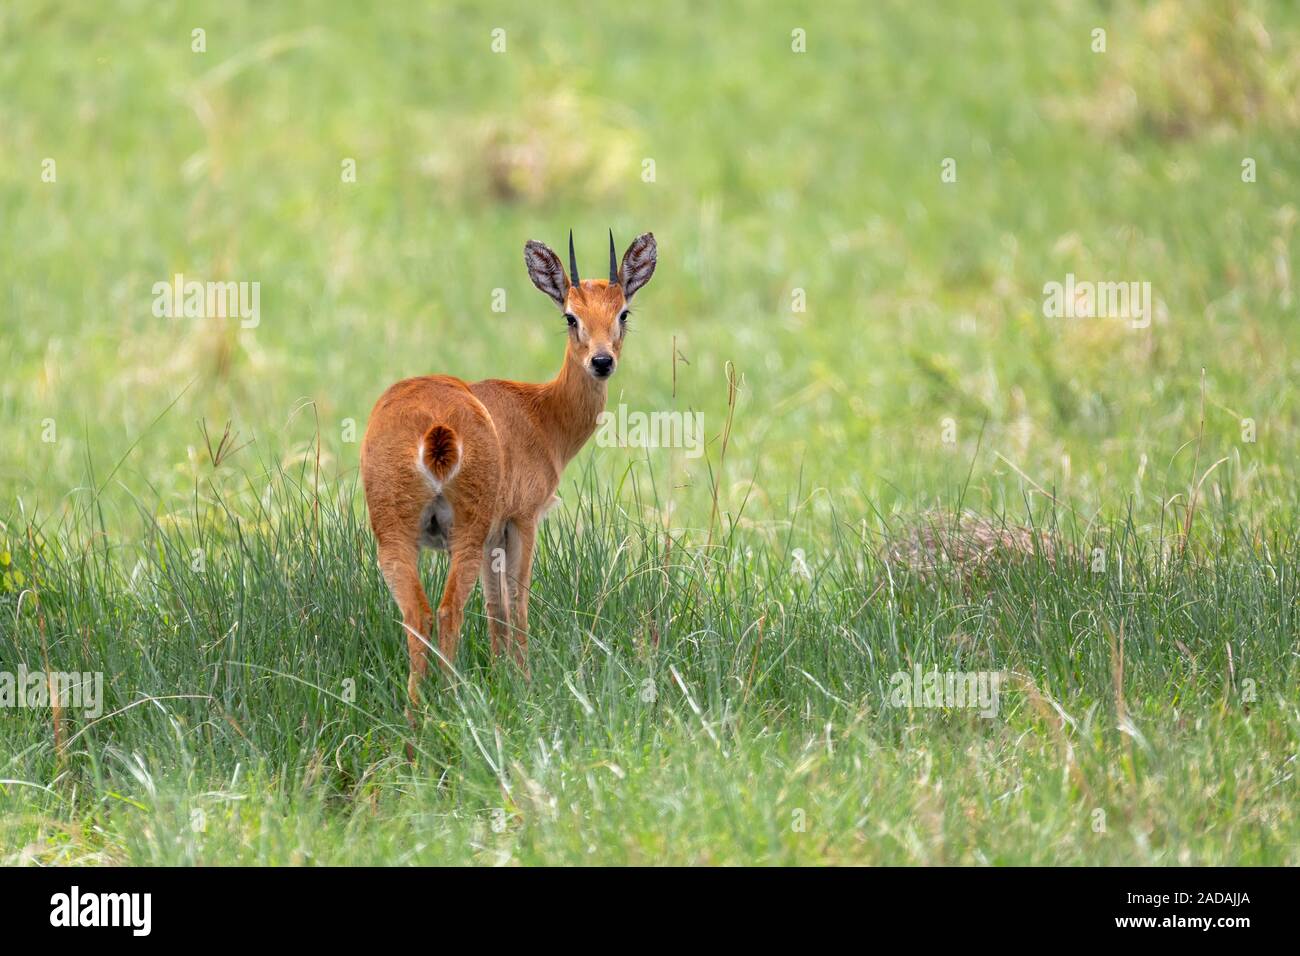 Oribi antelope Ethiopia, Africa wildlife Stock Photo